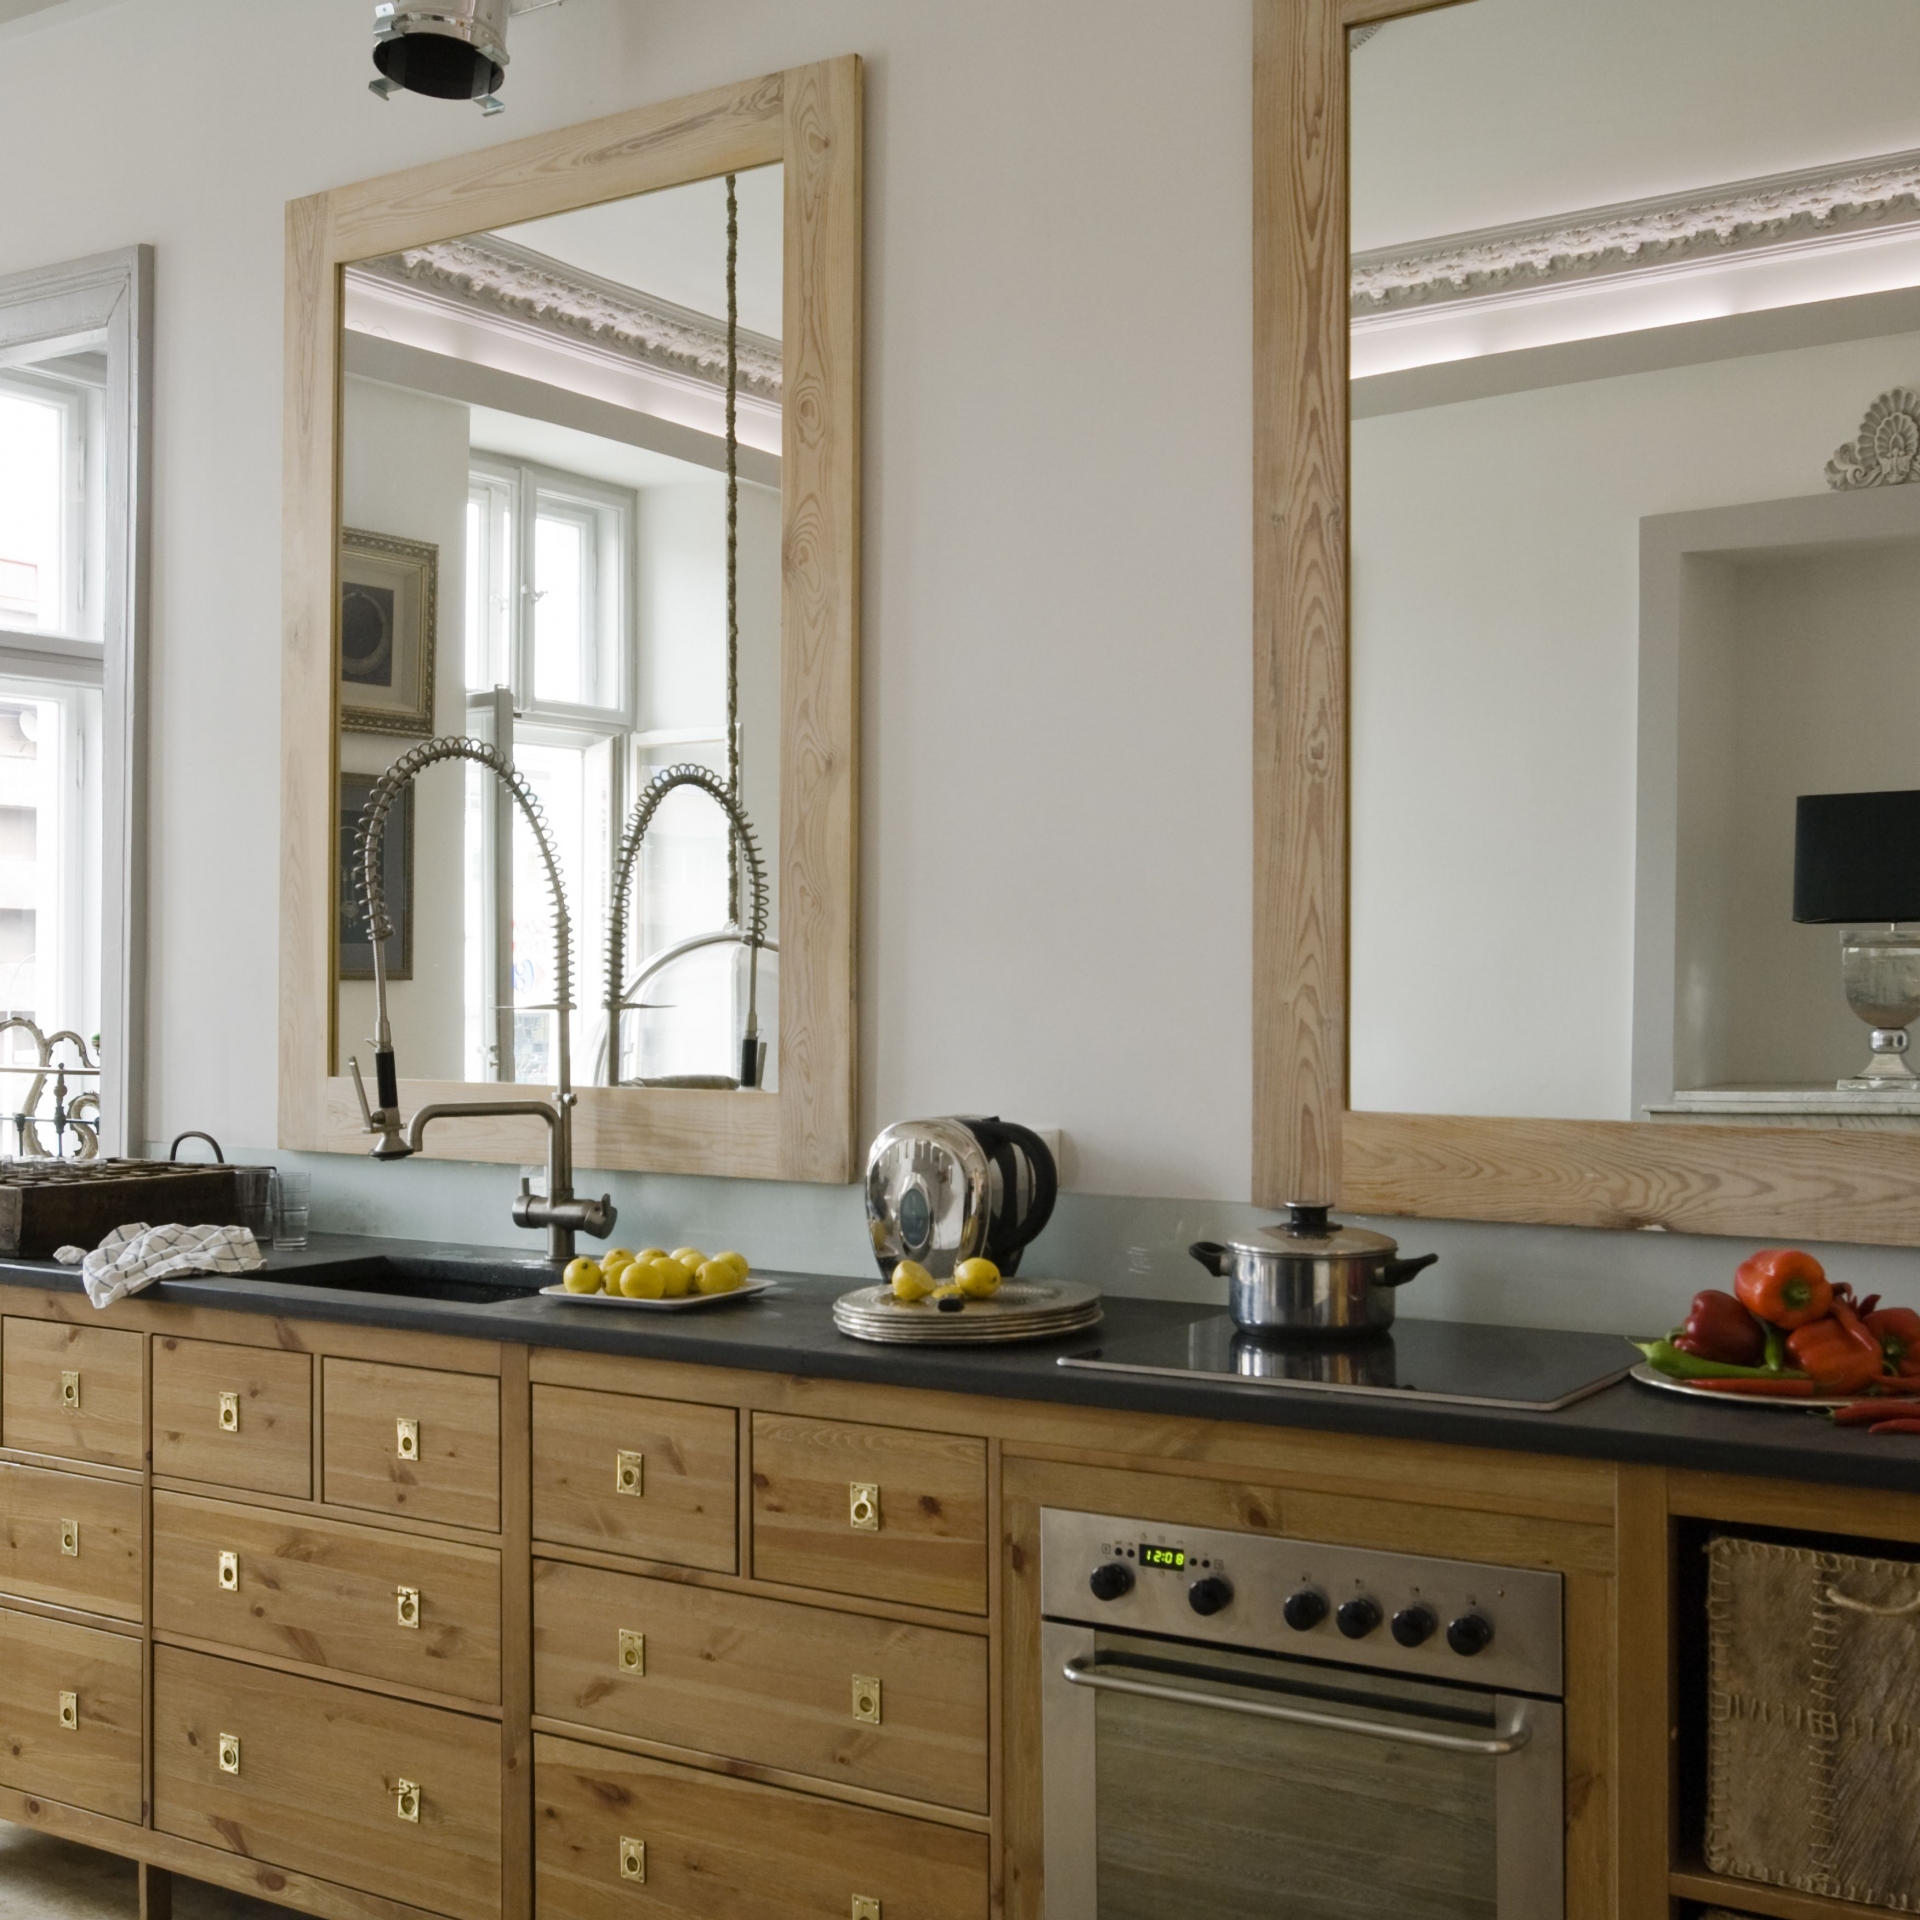 Nếu phòng bếp của bạn đủ dài và rộng thì hoàn toàn có thể kết hợp một lúc 2-3 tấm gương trên tường bếp với khoảng cách hợp lý để “nhân rộng” không gian, giúp cho khu vực nấu nướng đã rộng rãi càng thêm phần thoáng đãng và đẹp mắt.